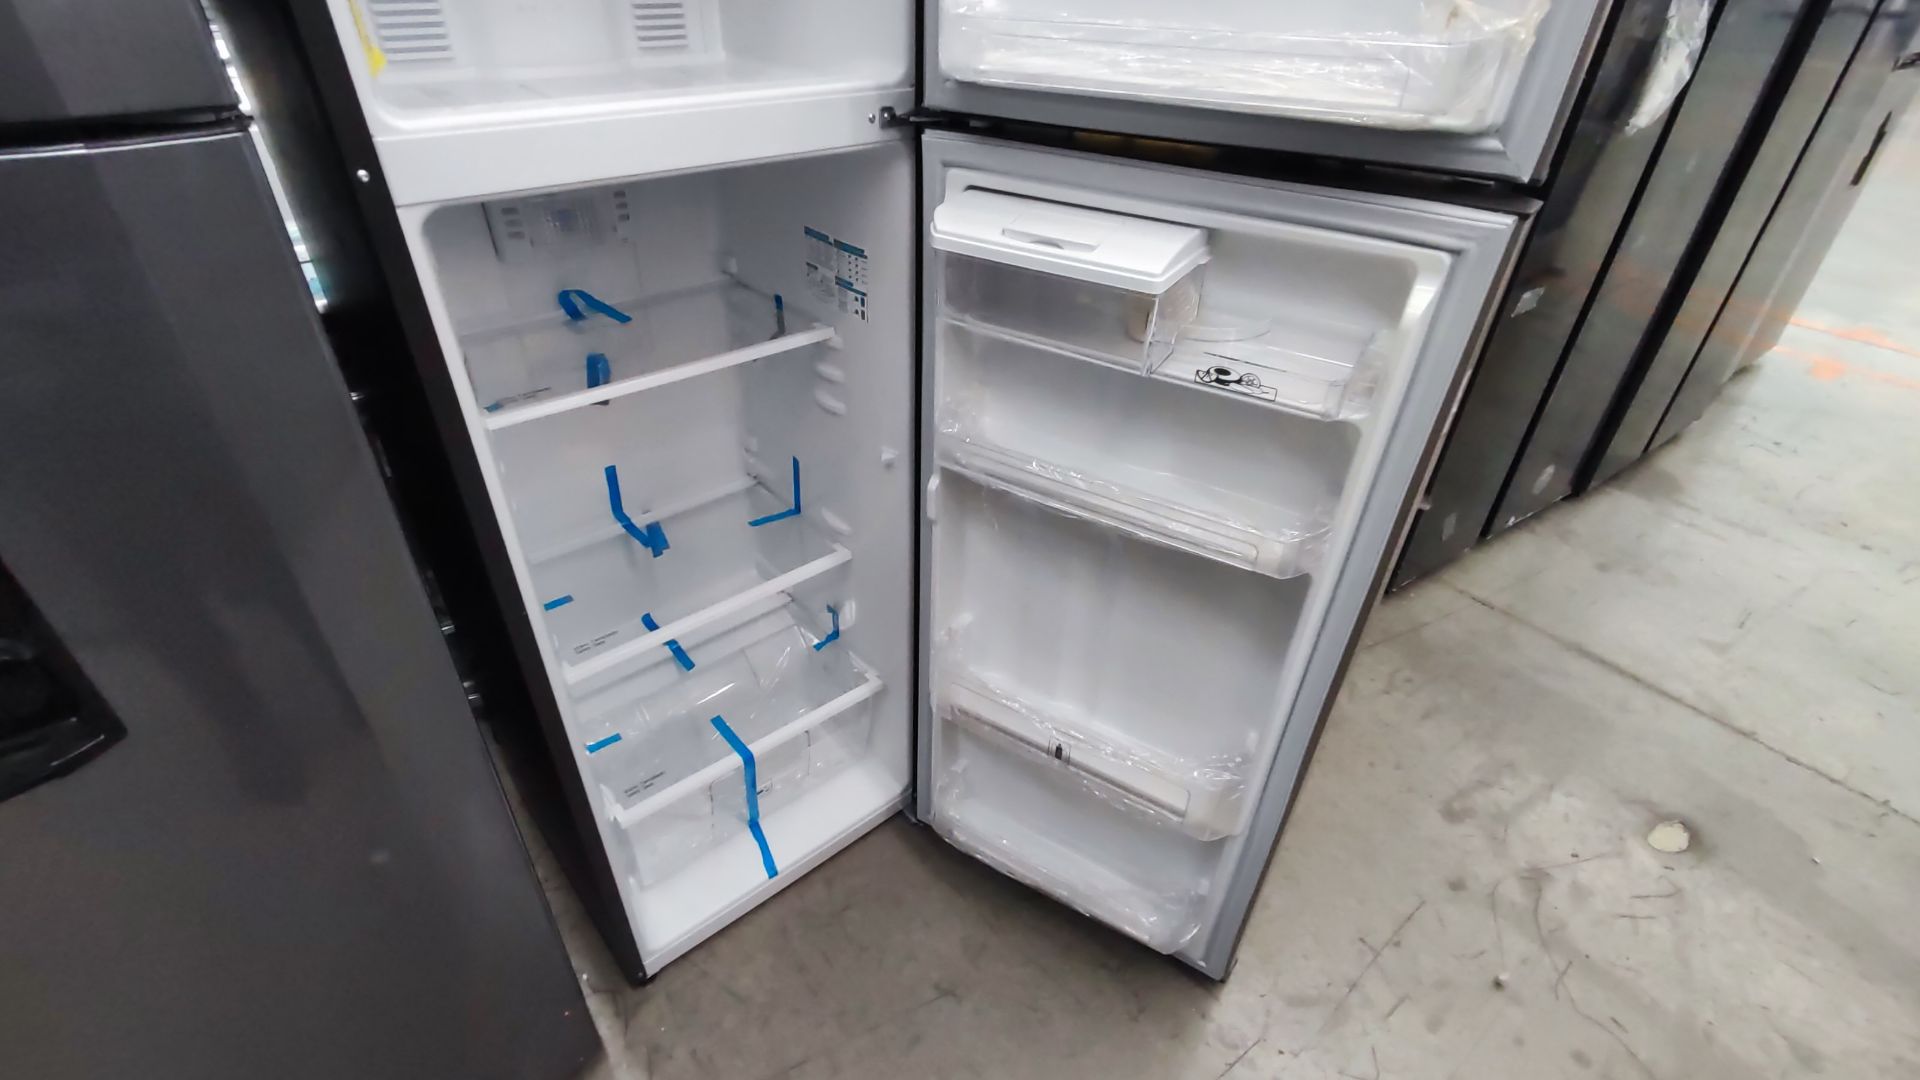 1 Refrigerador Marca Mabe, Modelo RMA300FJRM, Serie 2111B7011524, Color Gris Detalles Estéticos. Fa - Image 10 of 12